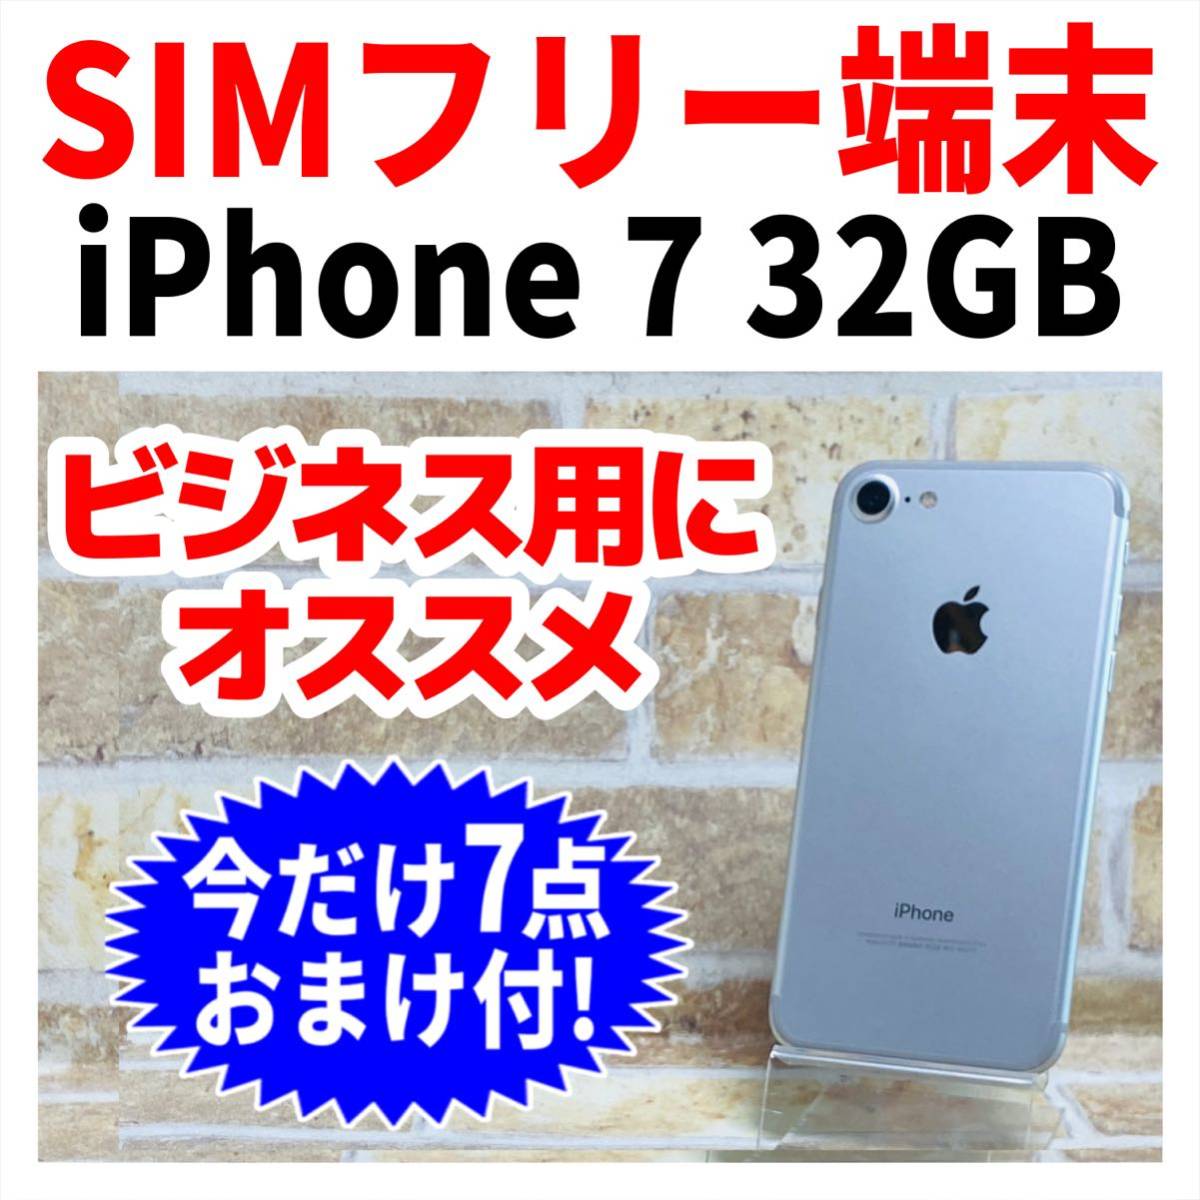 新品バッテリー iPhone 7 32GB シルバー SIMフリー ケース付 fkip 